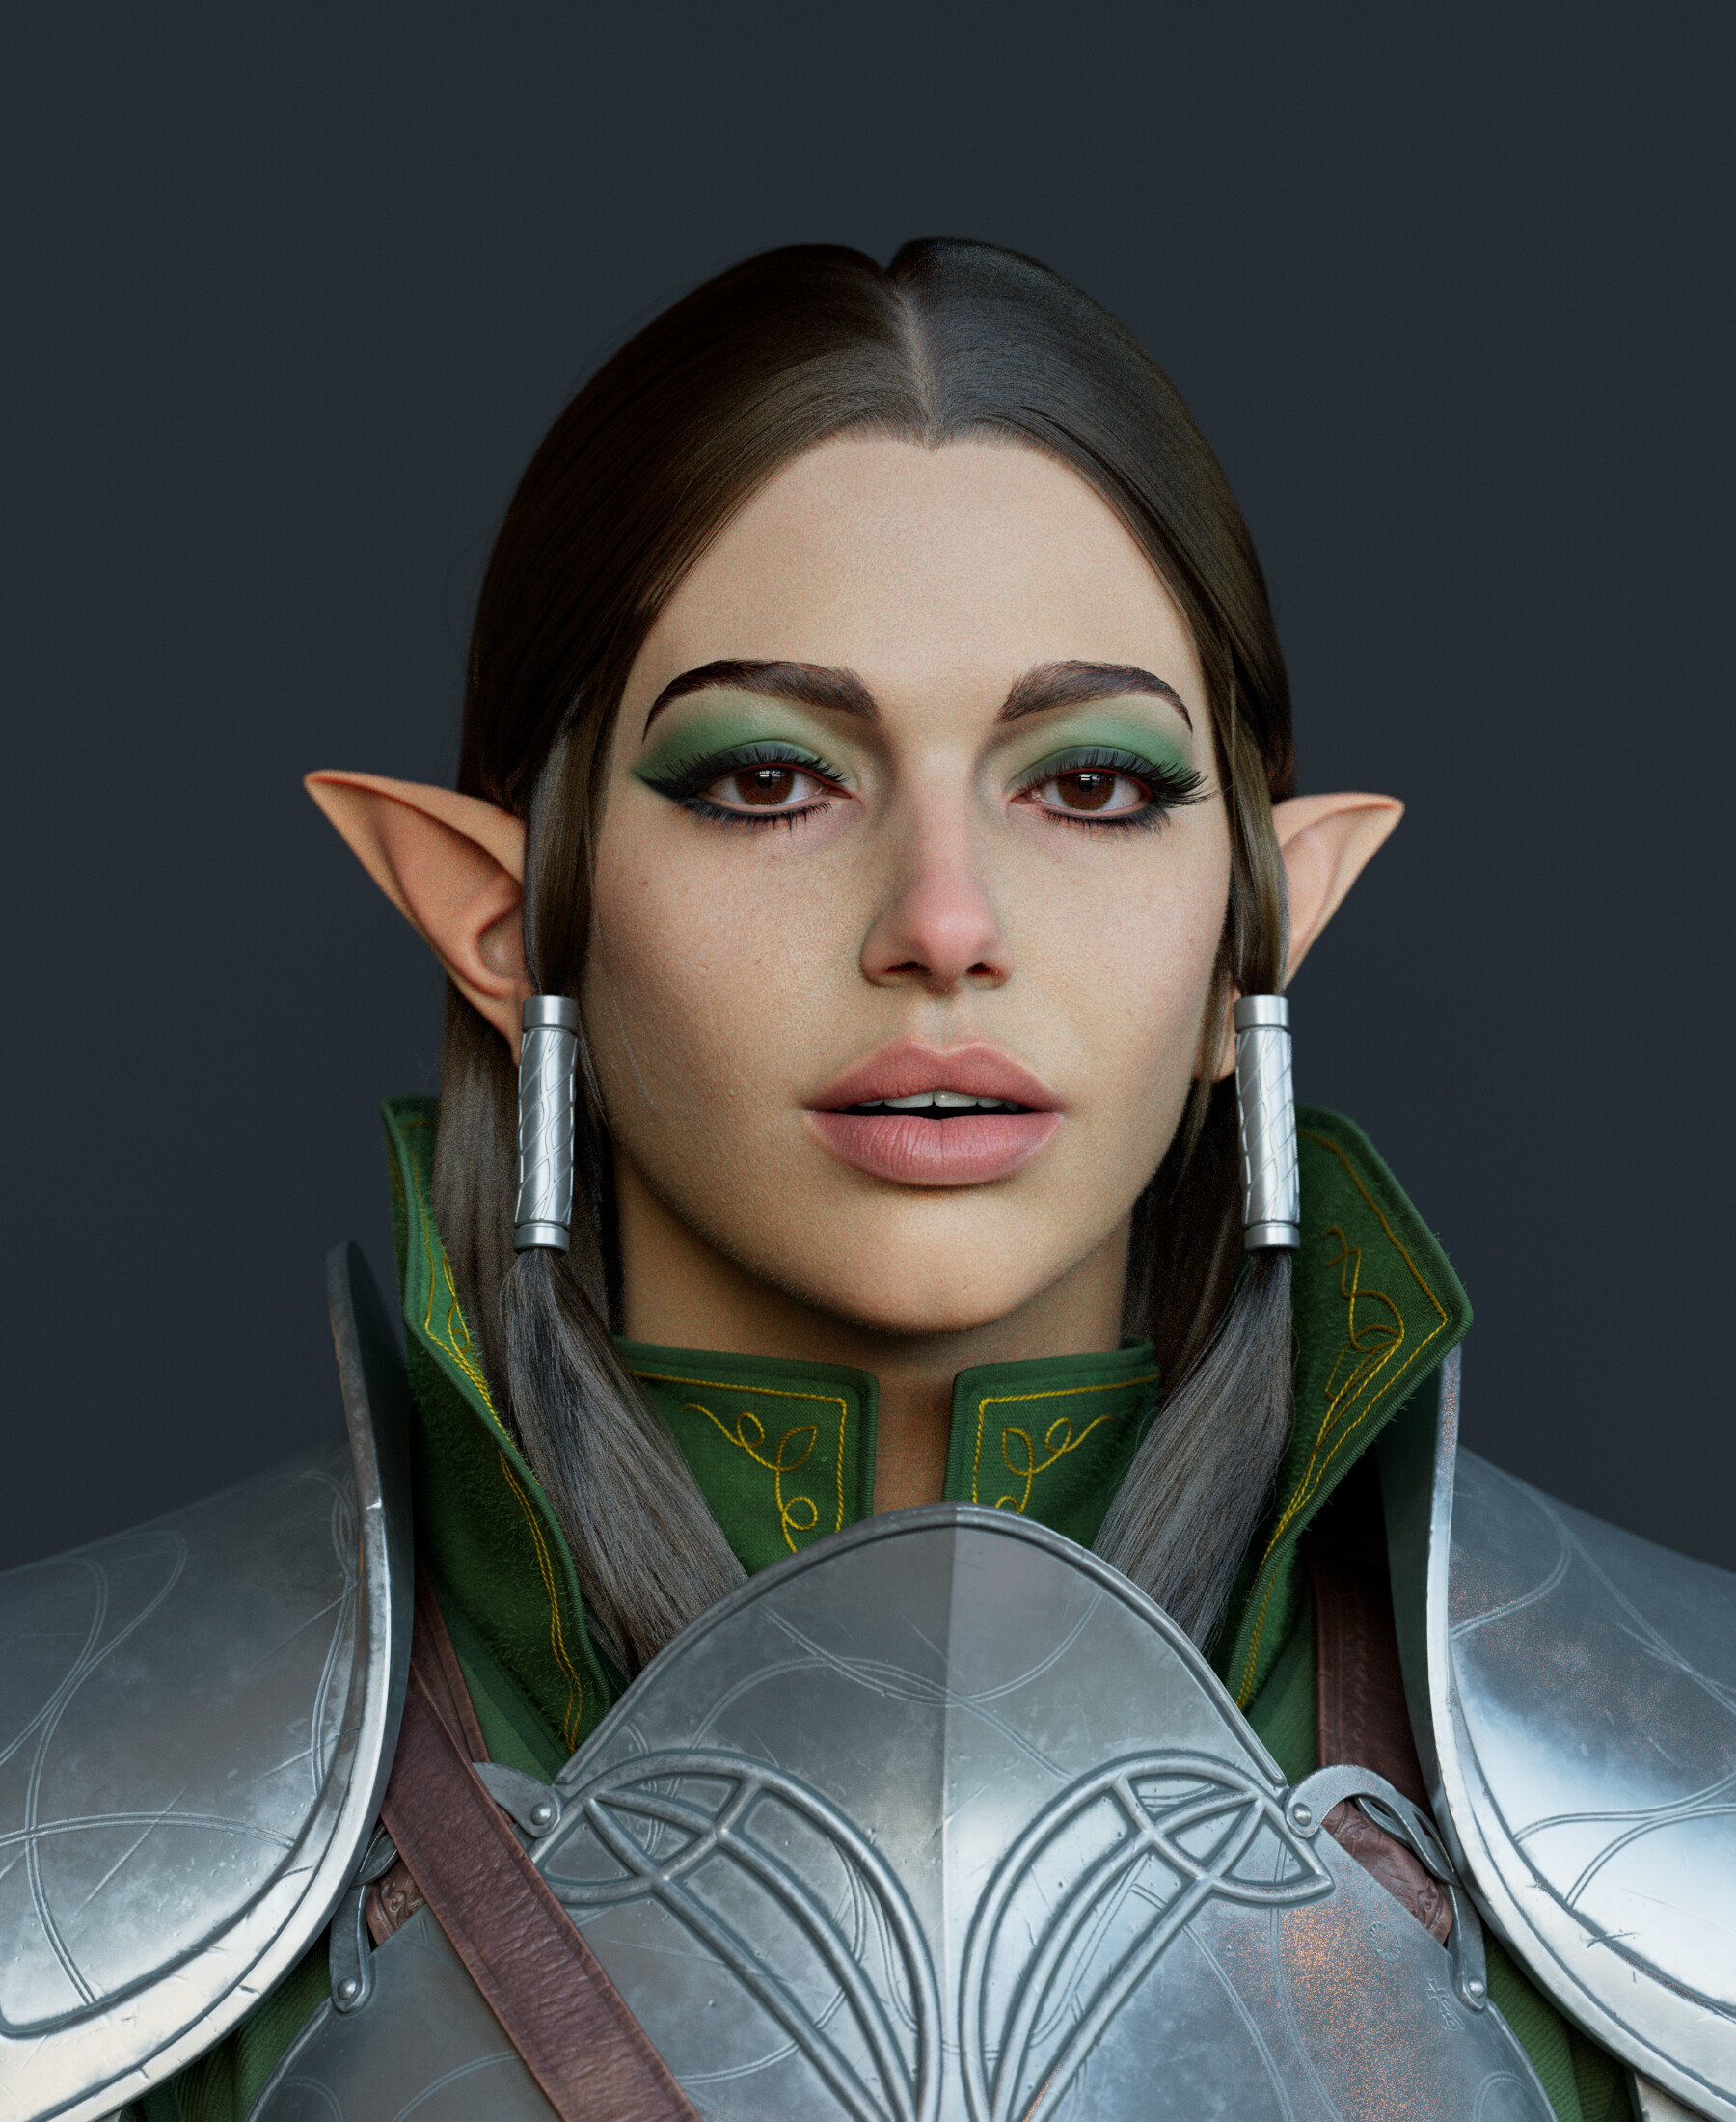 ArtStation - Elf girl portrait